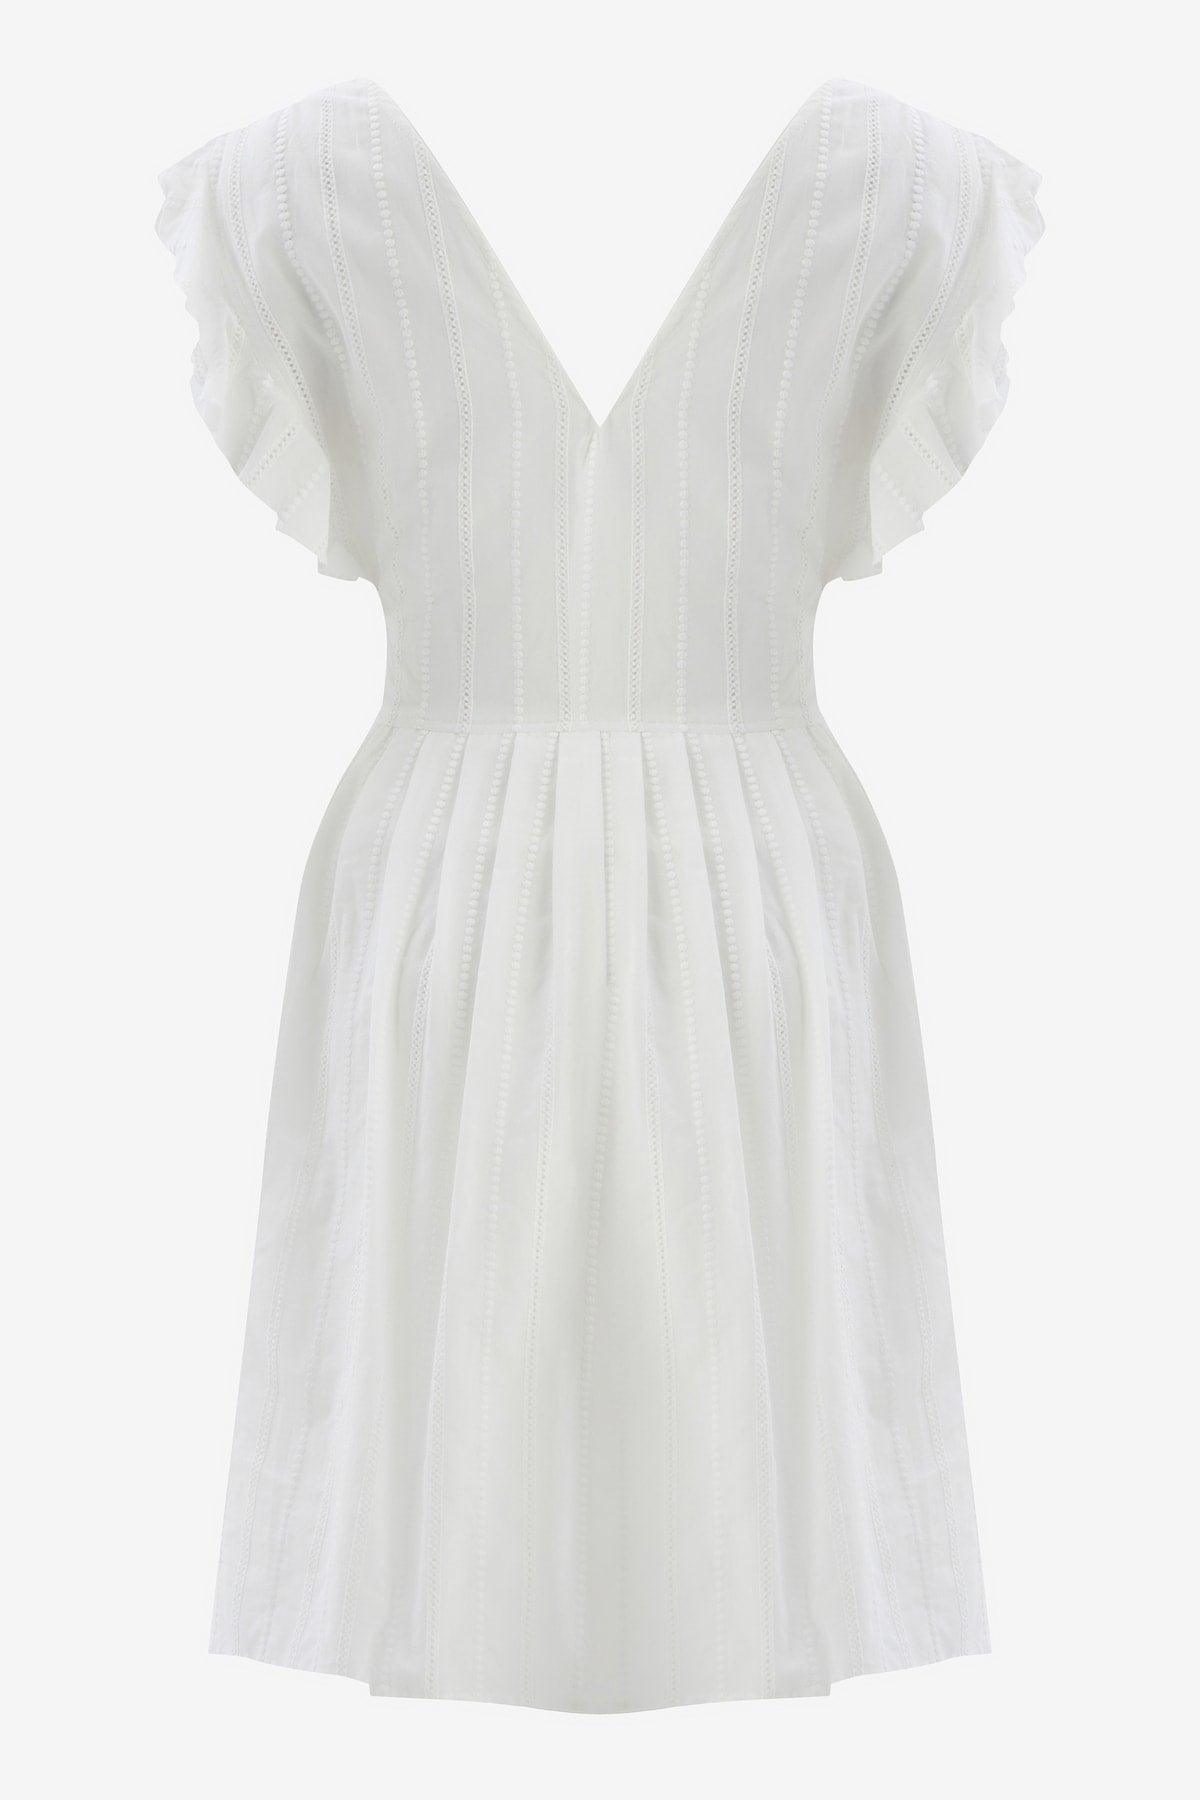 White Scalloped Sleeveless Midi Dress - Swordslife